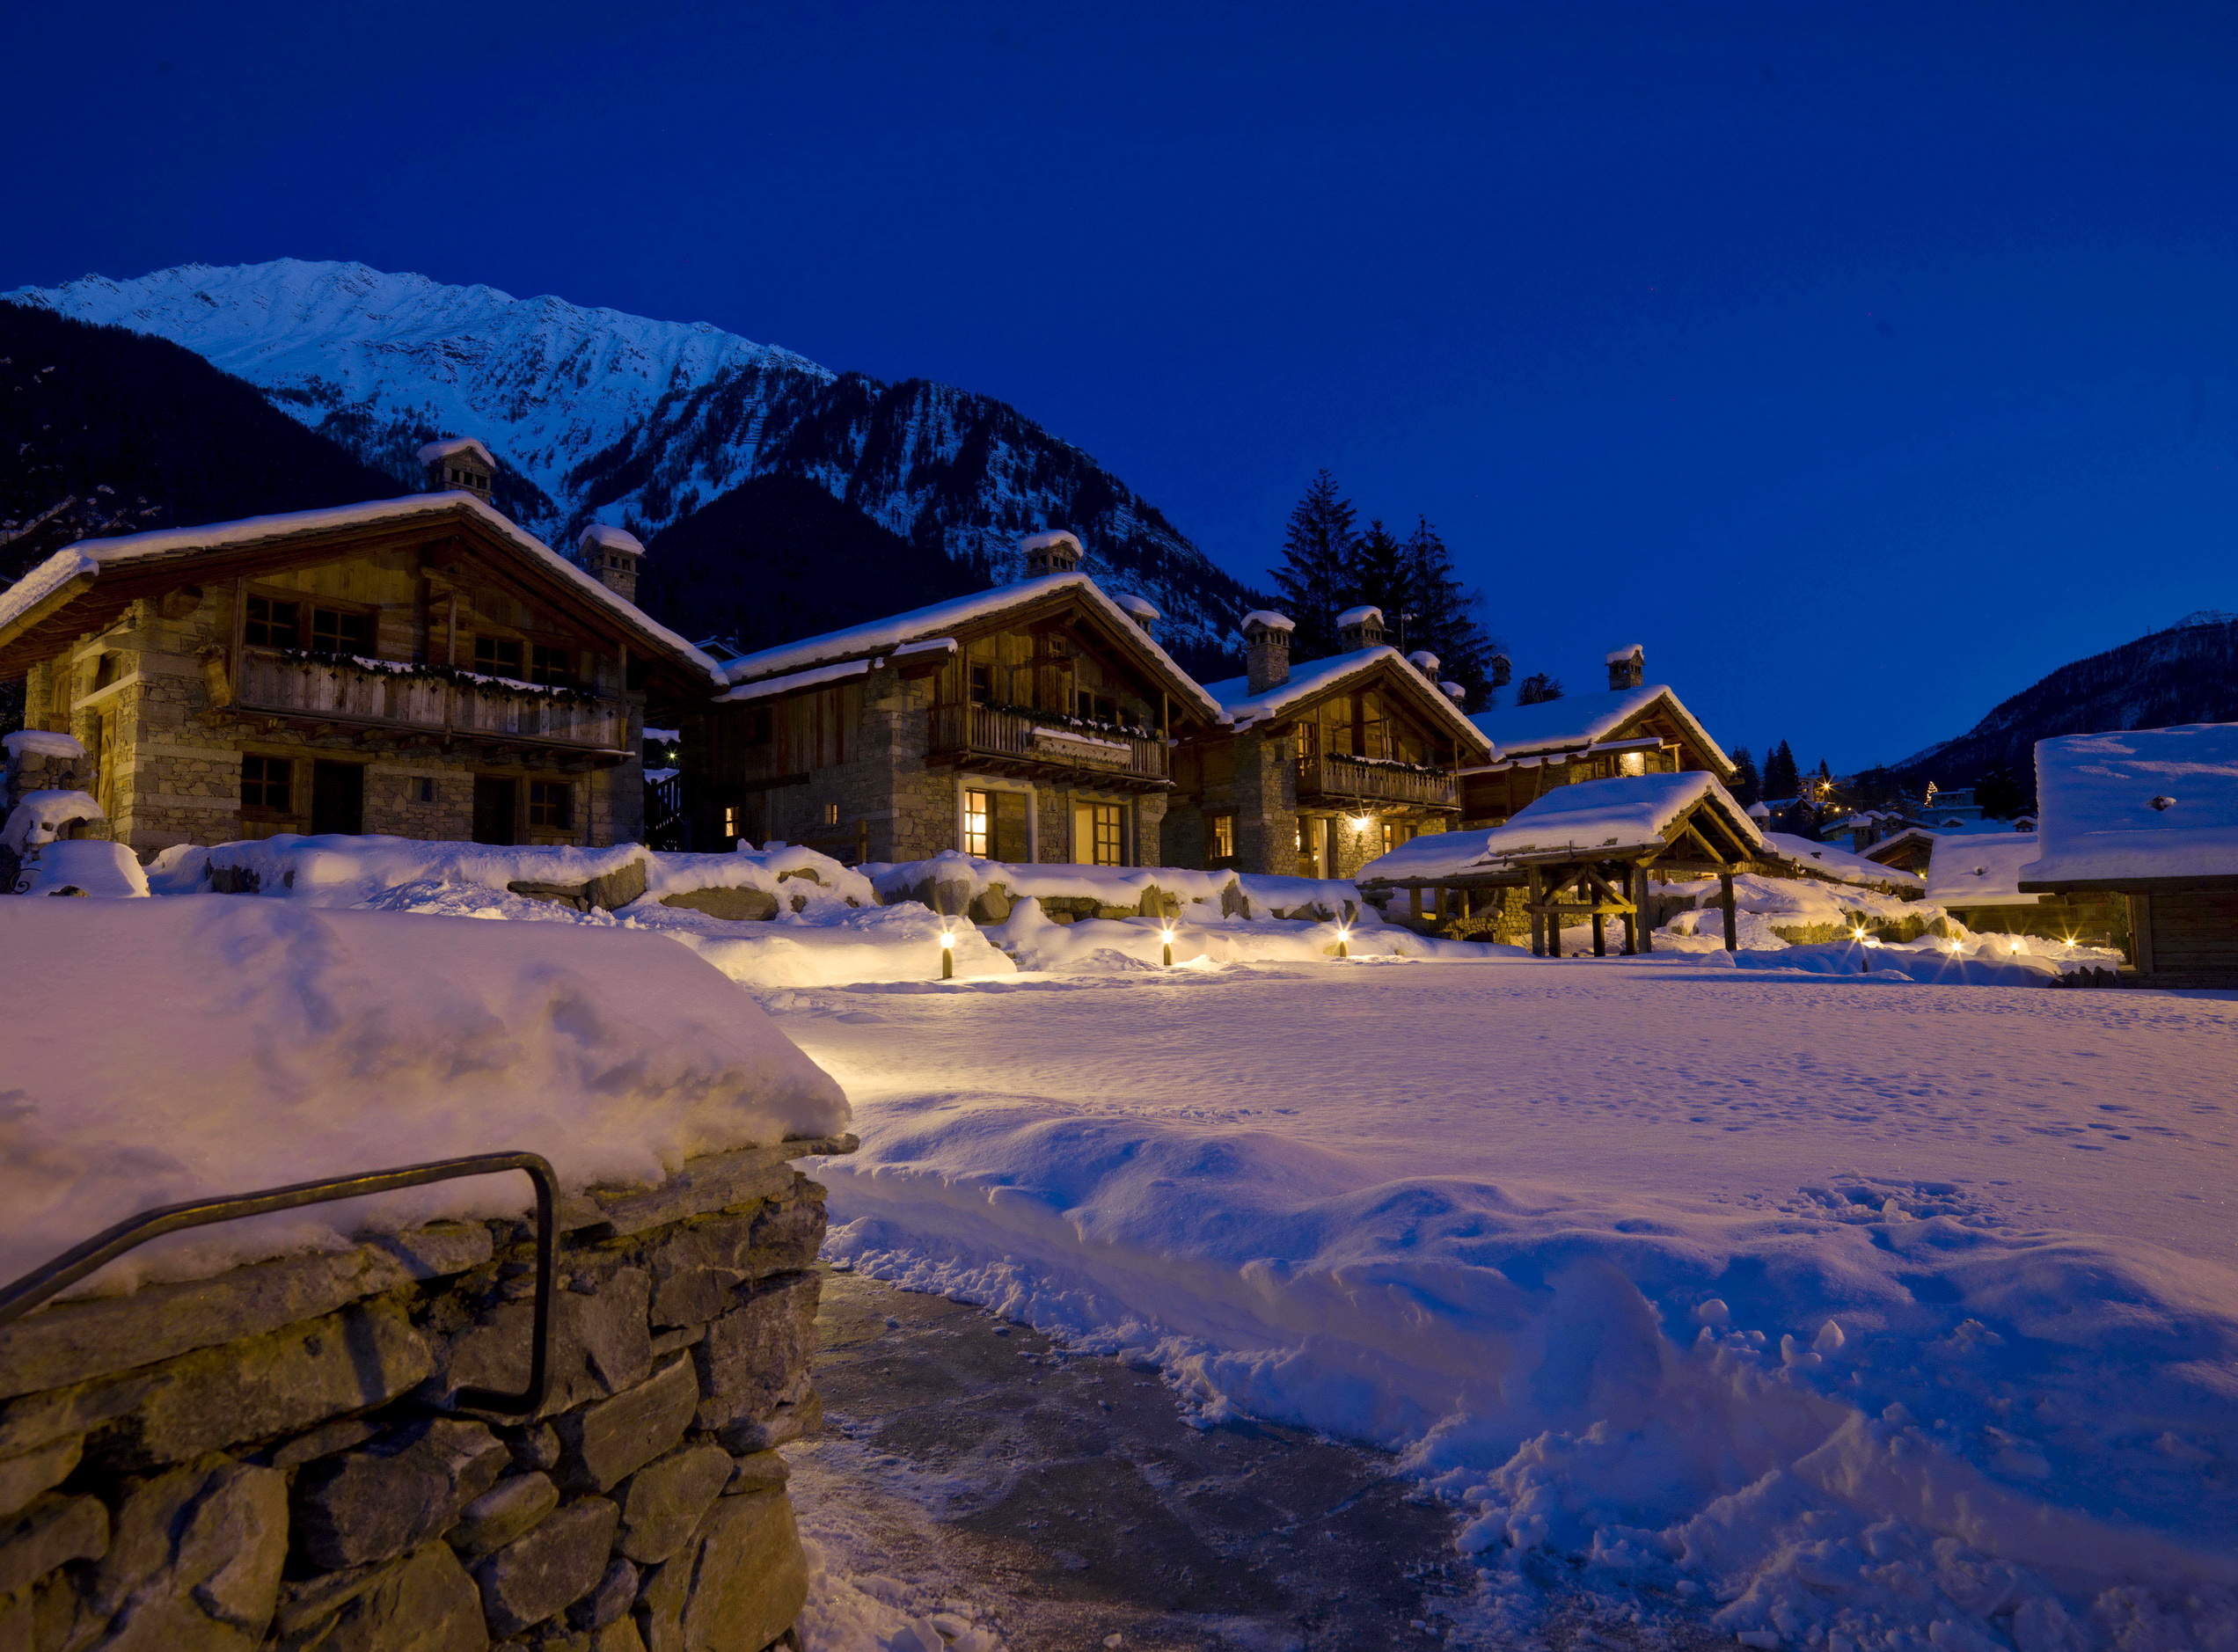 Снег на горнолыжных курортах. Курорт в горах Италии Курмайор. Андорра горнолыжный курорт Шале. Дом в горах. Горнолыжный курорт ночью.